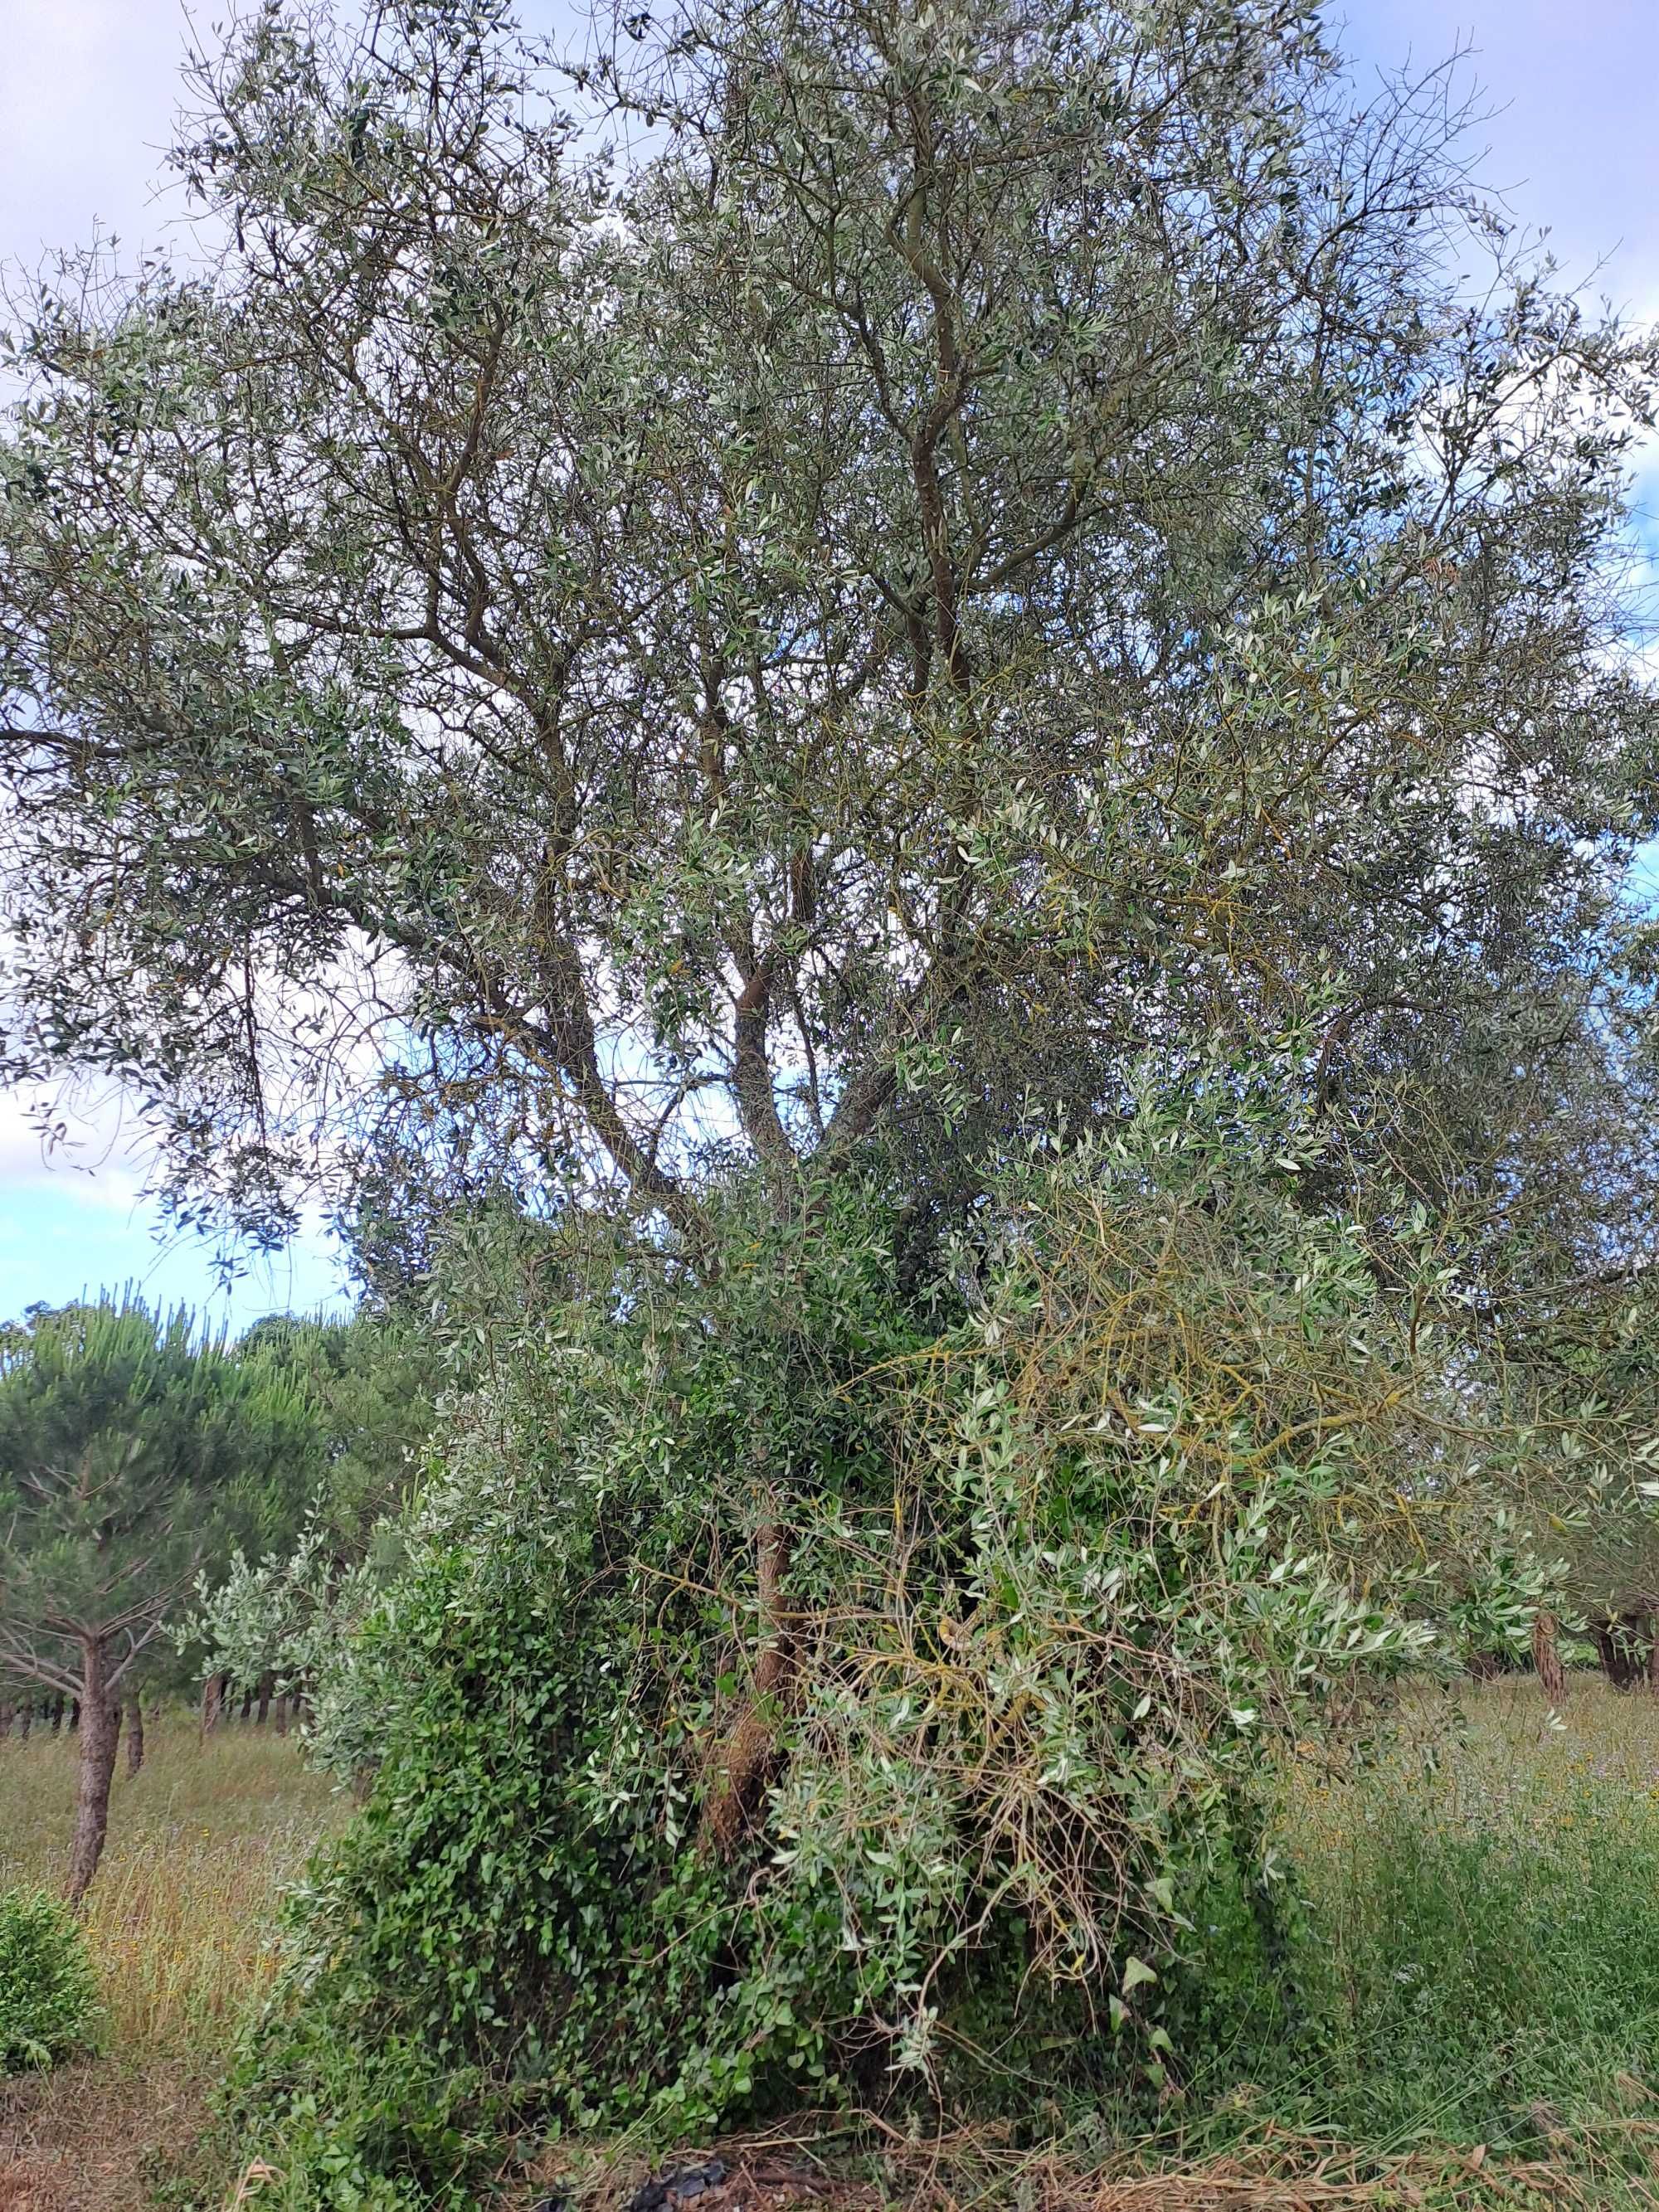 Venda de oliveiras